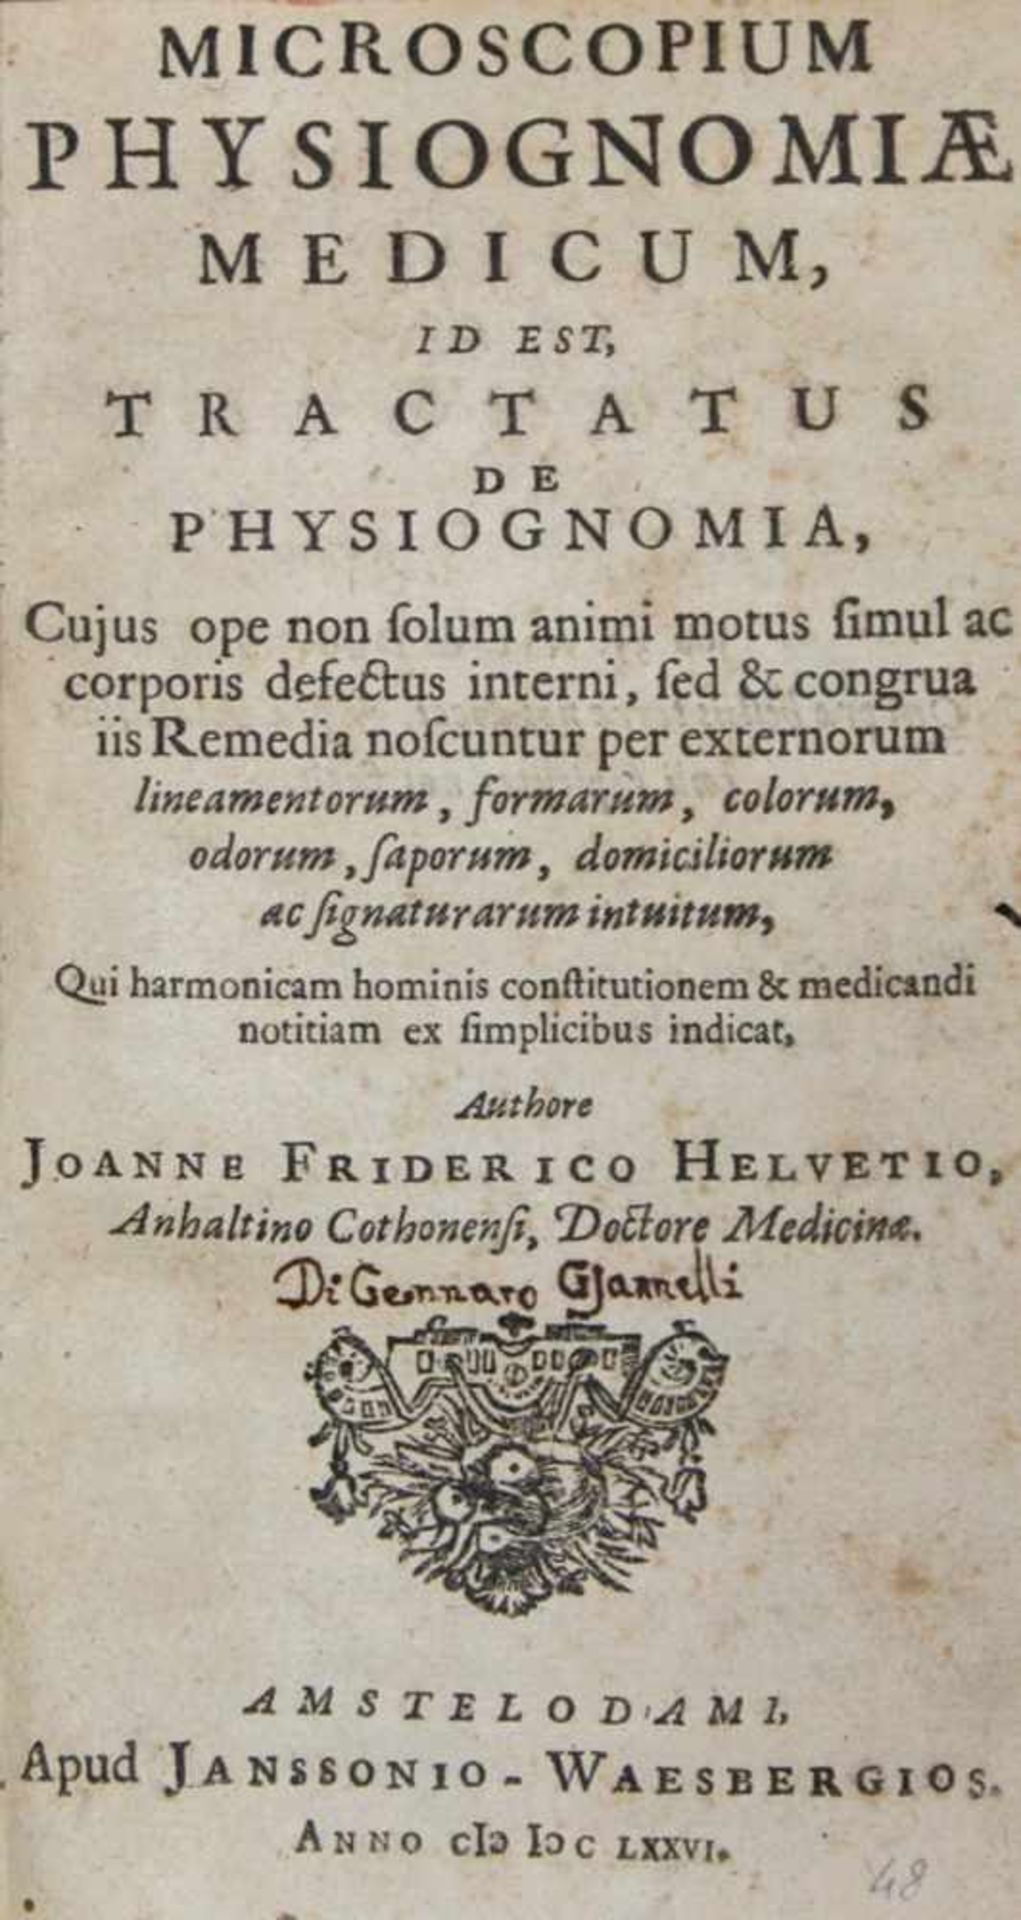 Helvetius,J.F.Microscopium physiognomiae medicum, id est, tractatus de physiognomia... Amsterdam, - Image 2 of 2